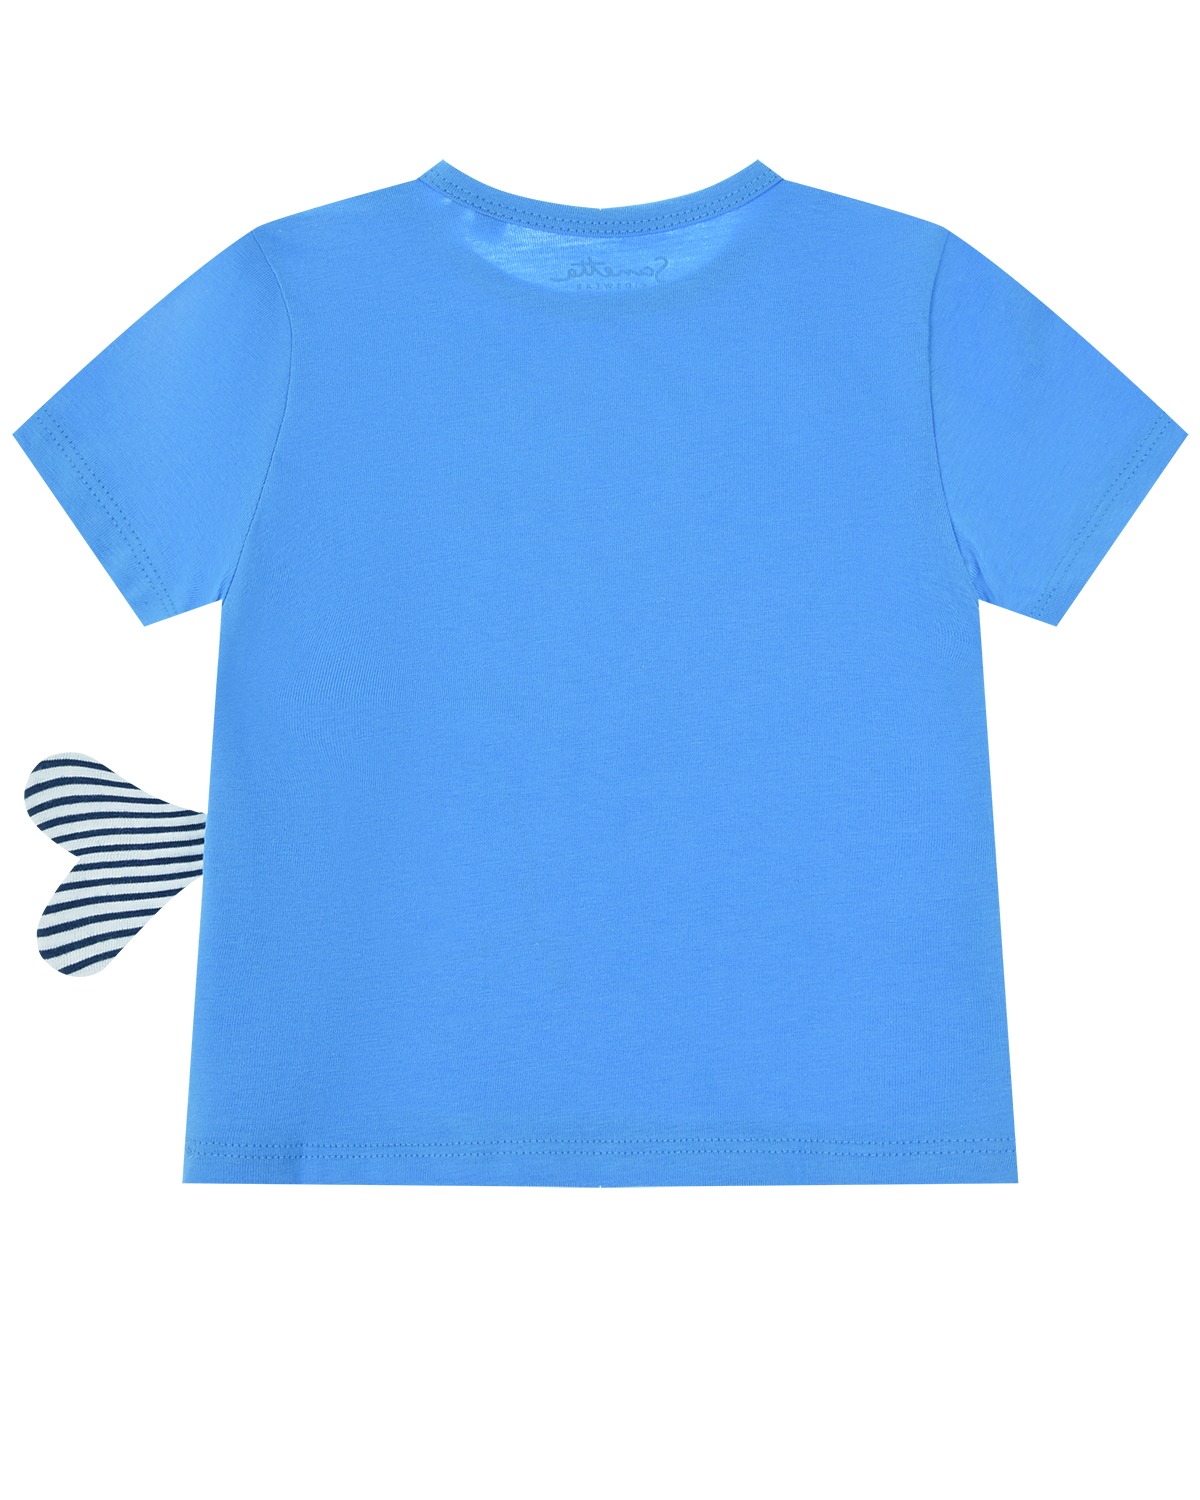 Синяя футболка с принтом "Кит" Sanetta Kidswear детская - фото 2